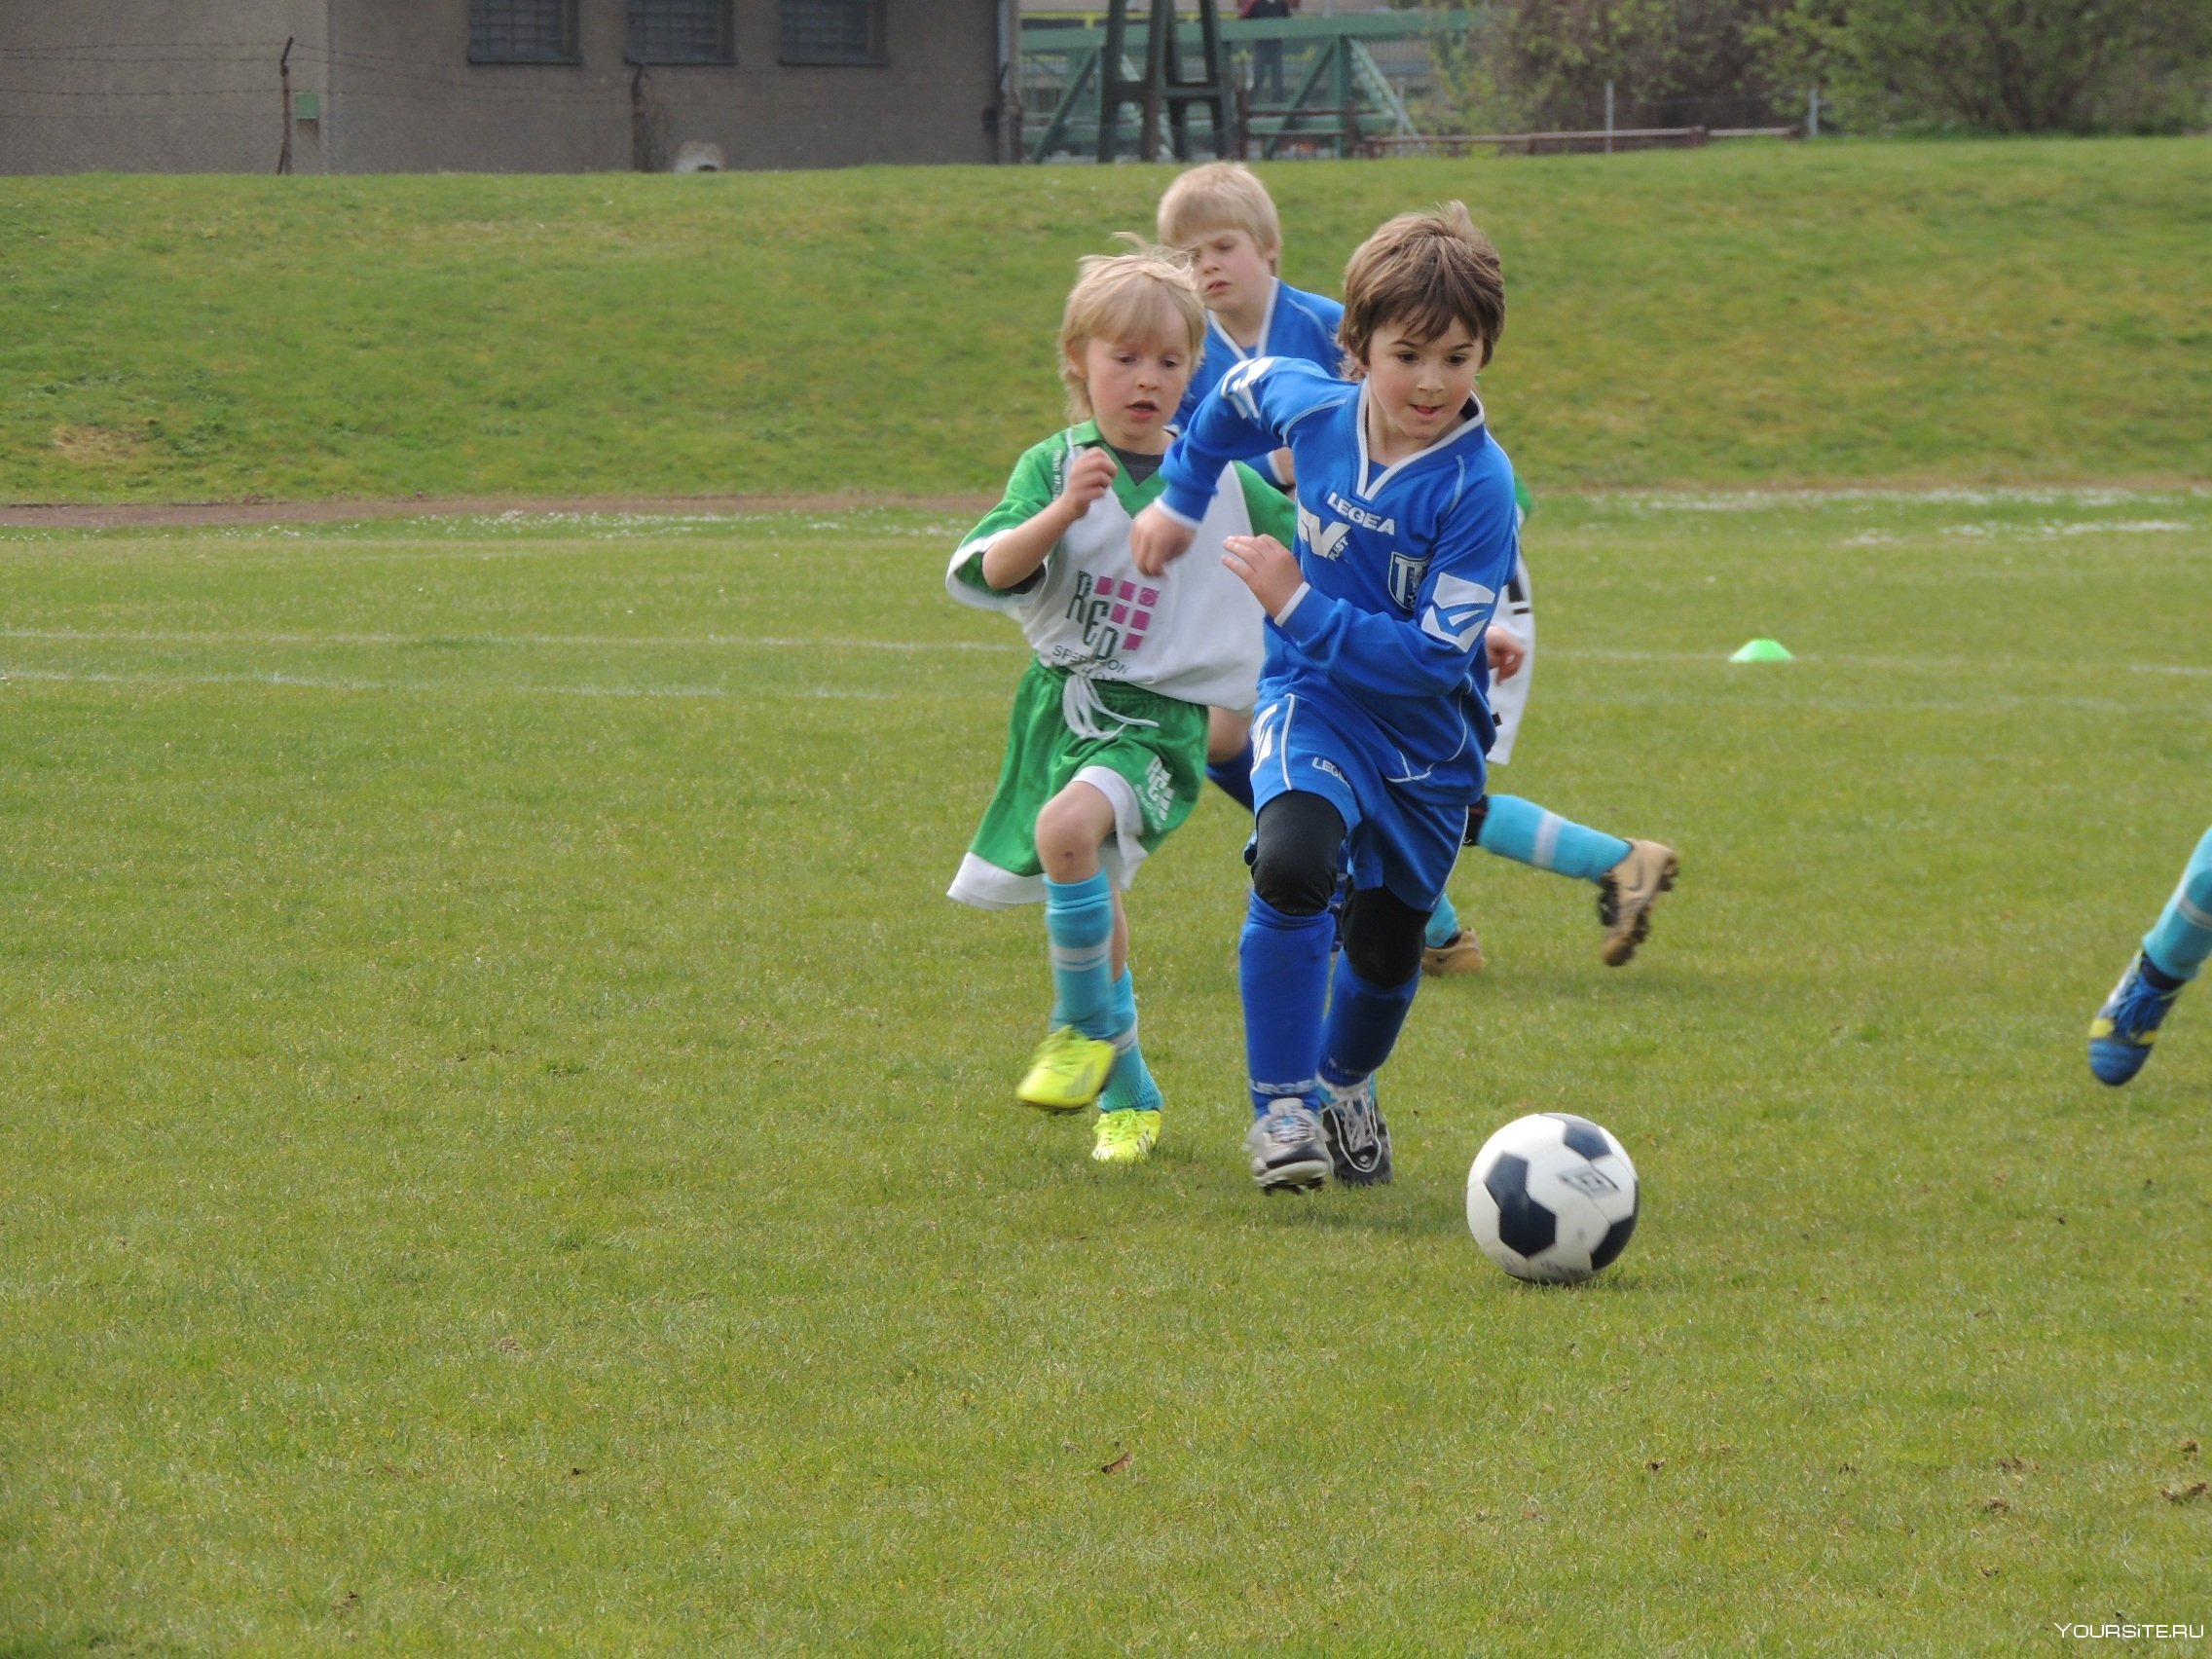 Там играют в футбол. ФК Олимпия Щербинка. Дети футболисты. Дети играют в футбол. Маленький футболист.